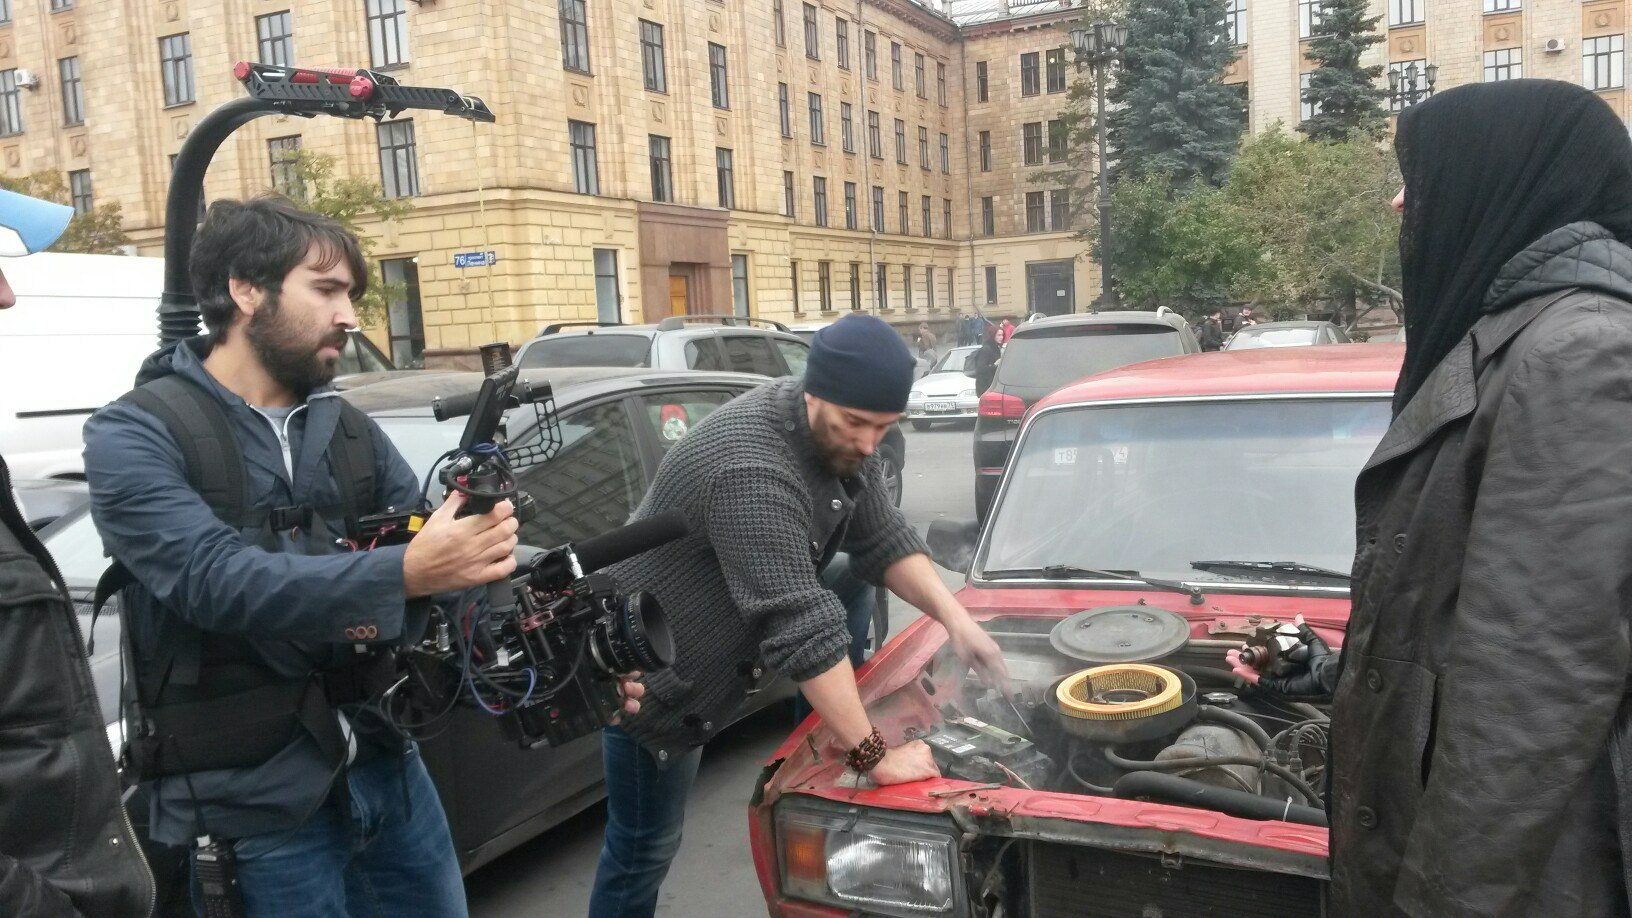 Теймур начинал карьеру на федеральных каналах с небольших проектов для <nobr class="_">ТВ-3</nobr>, съемки проходили в Челябинске